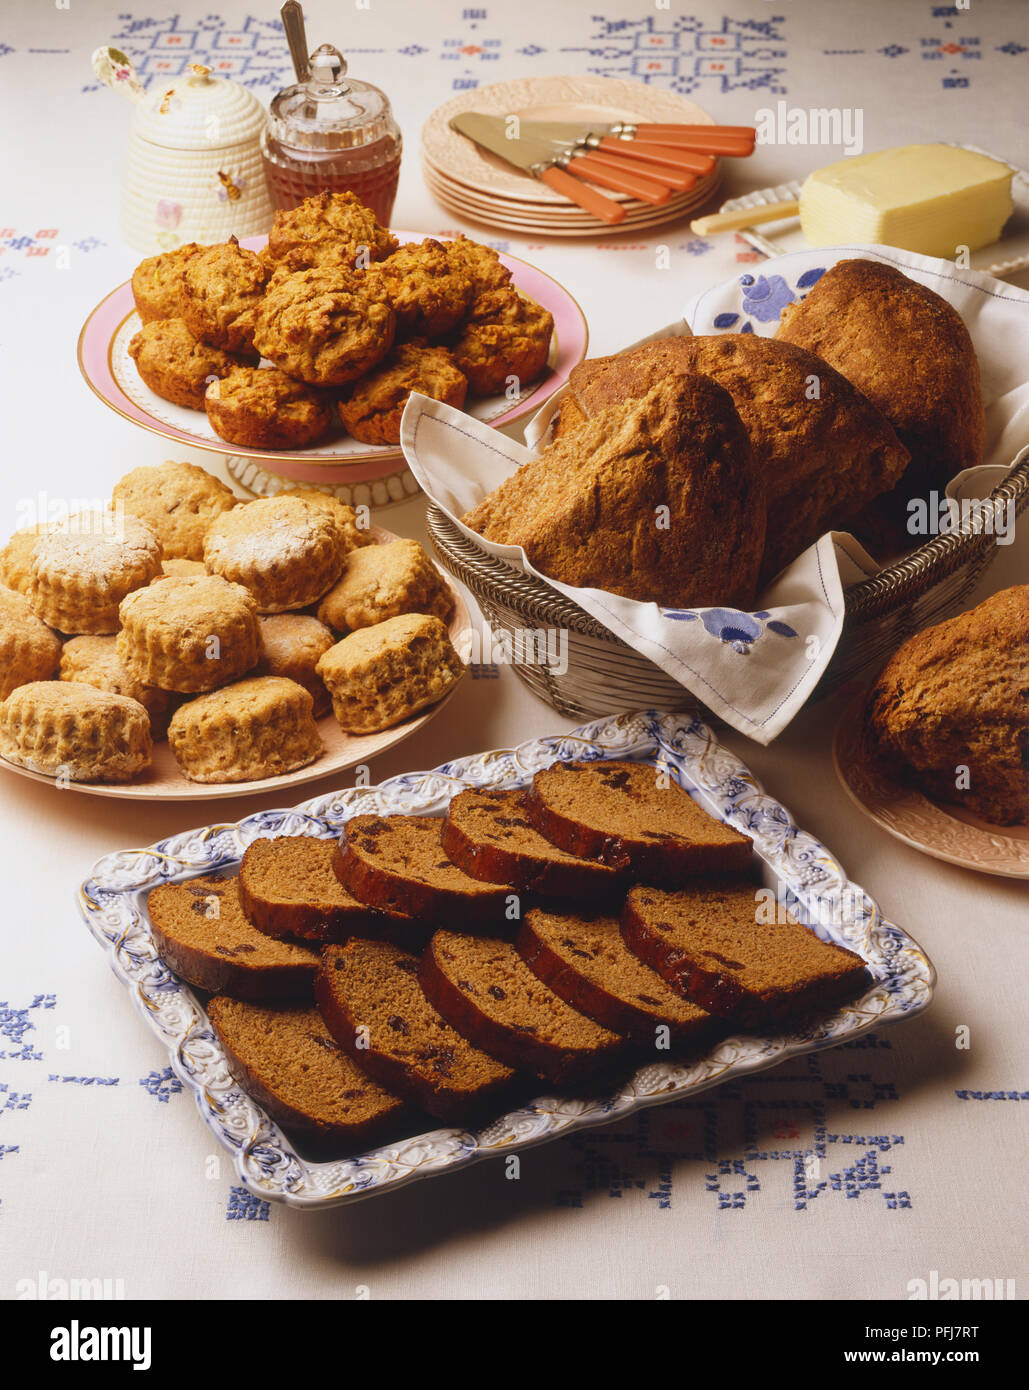 Anzeige von Muffins, Scones, Scheiben von Schokolade Kuchen und crusty, keilförmige Brötchen, Honig, Butter, Teller und Messer, auf Bestickten weißen Tischdecke Stockfoto